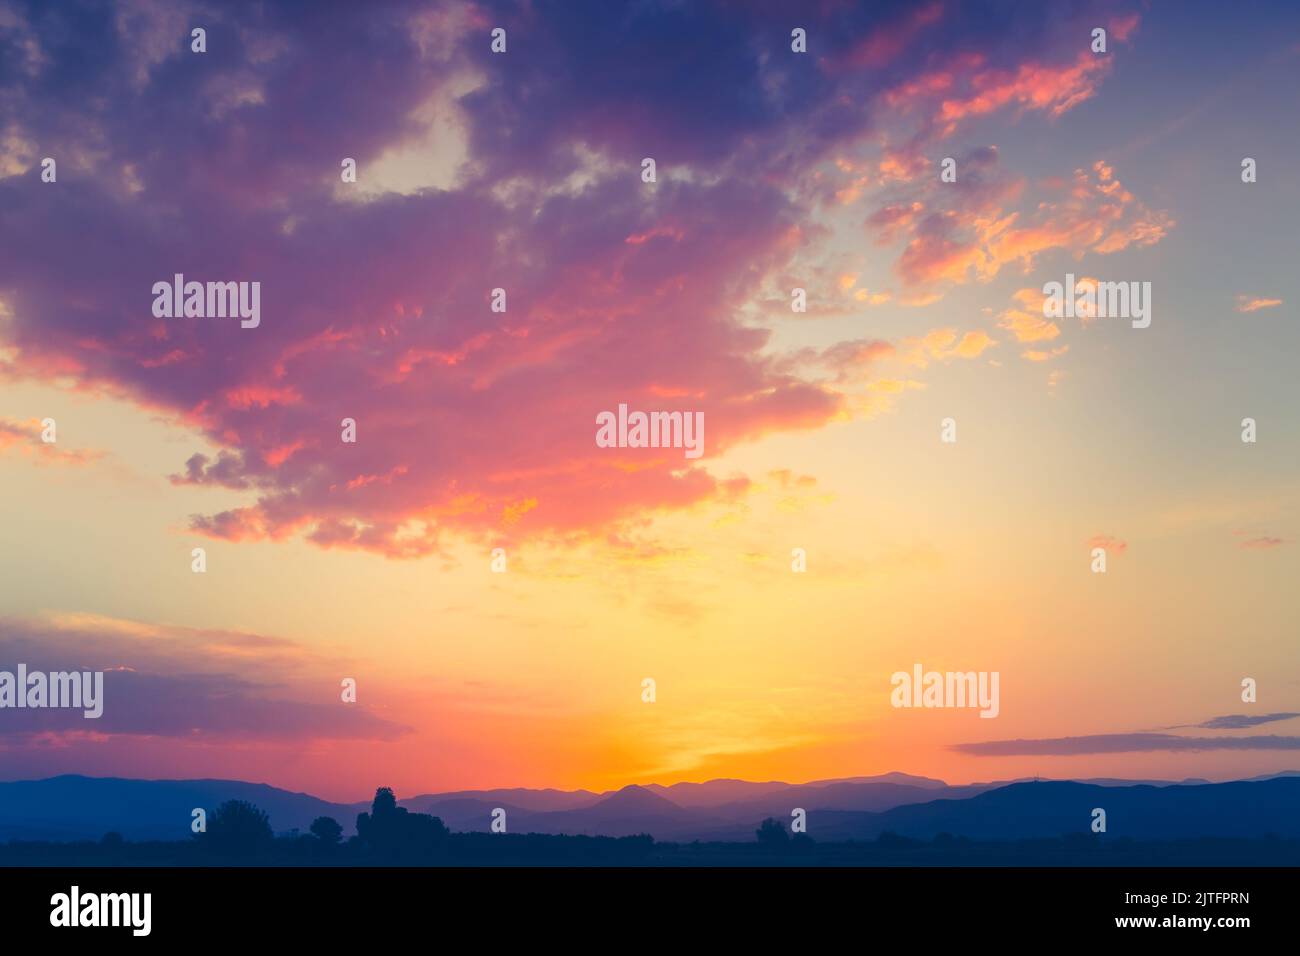 Farbenfroher Sonnenuntergang am Himmel mit hellen Wolken und Bergkette im Hintergrund. Atemberaubende natürliche Sommerabendszene. Stockfoto